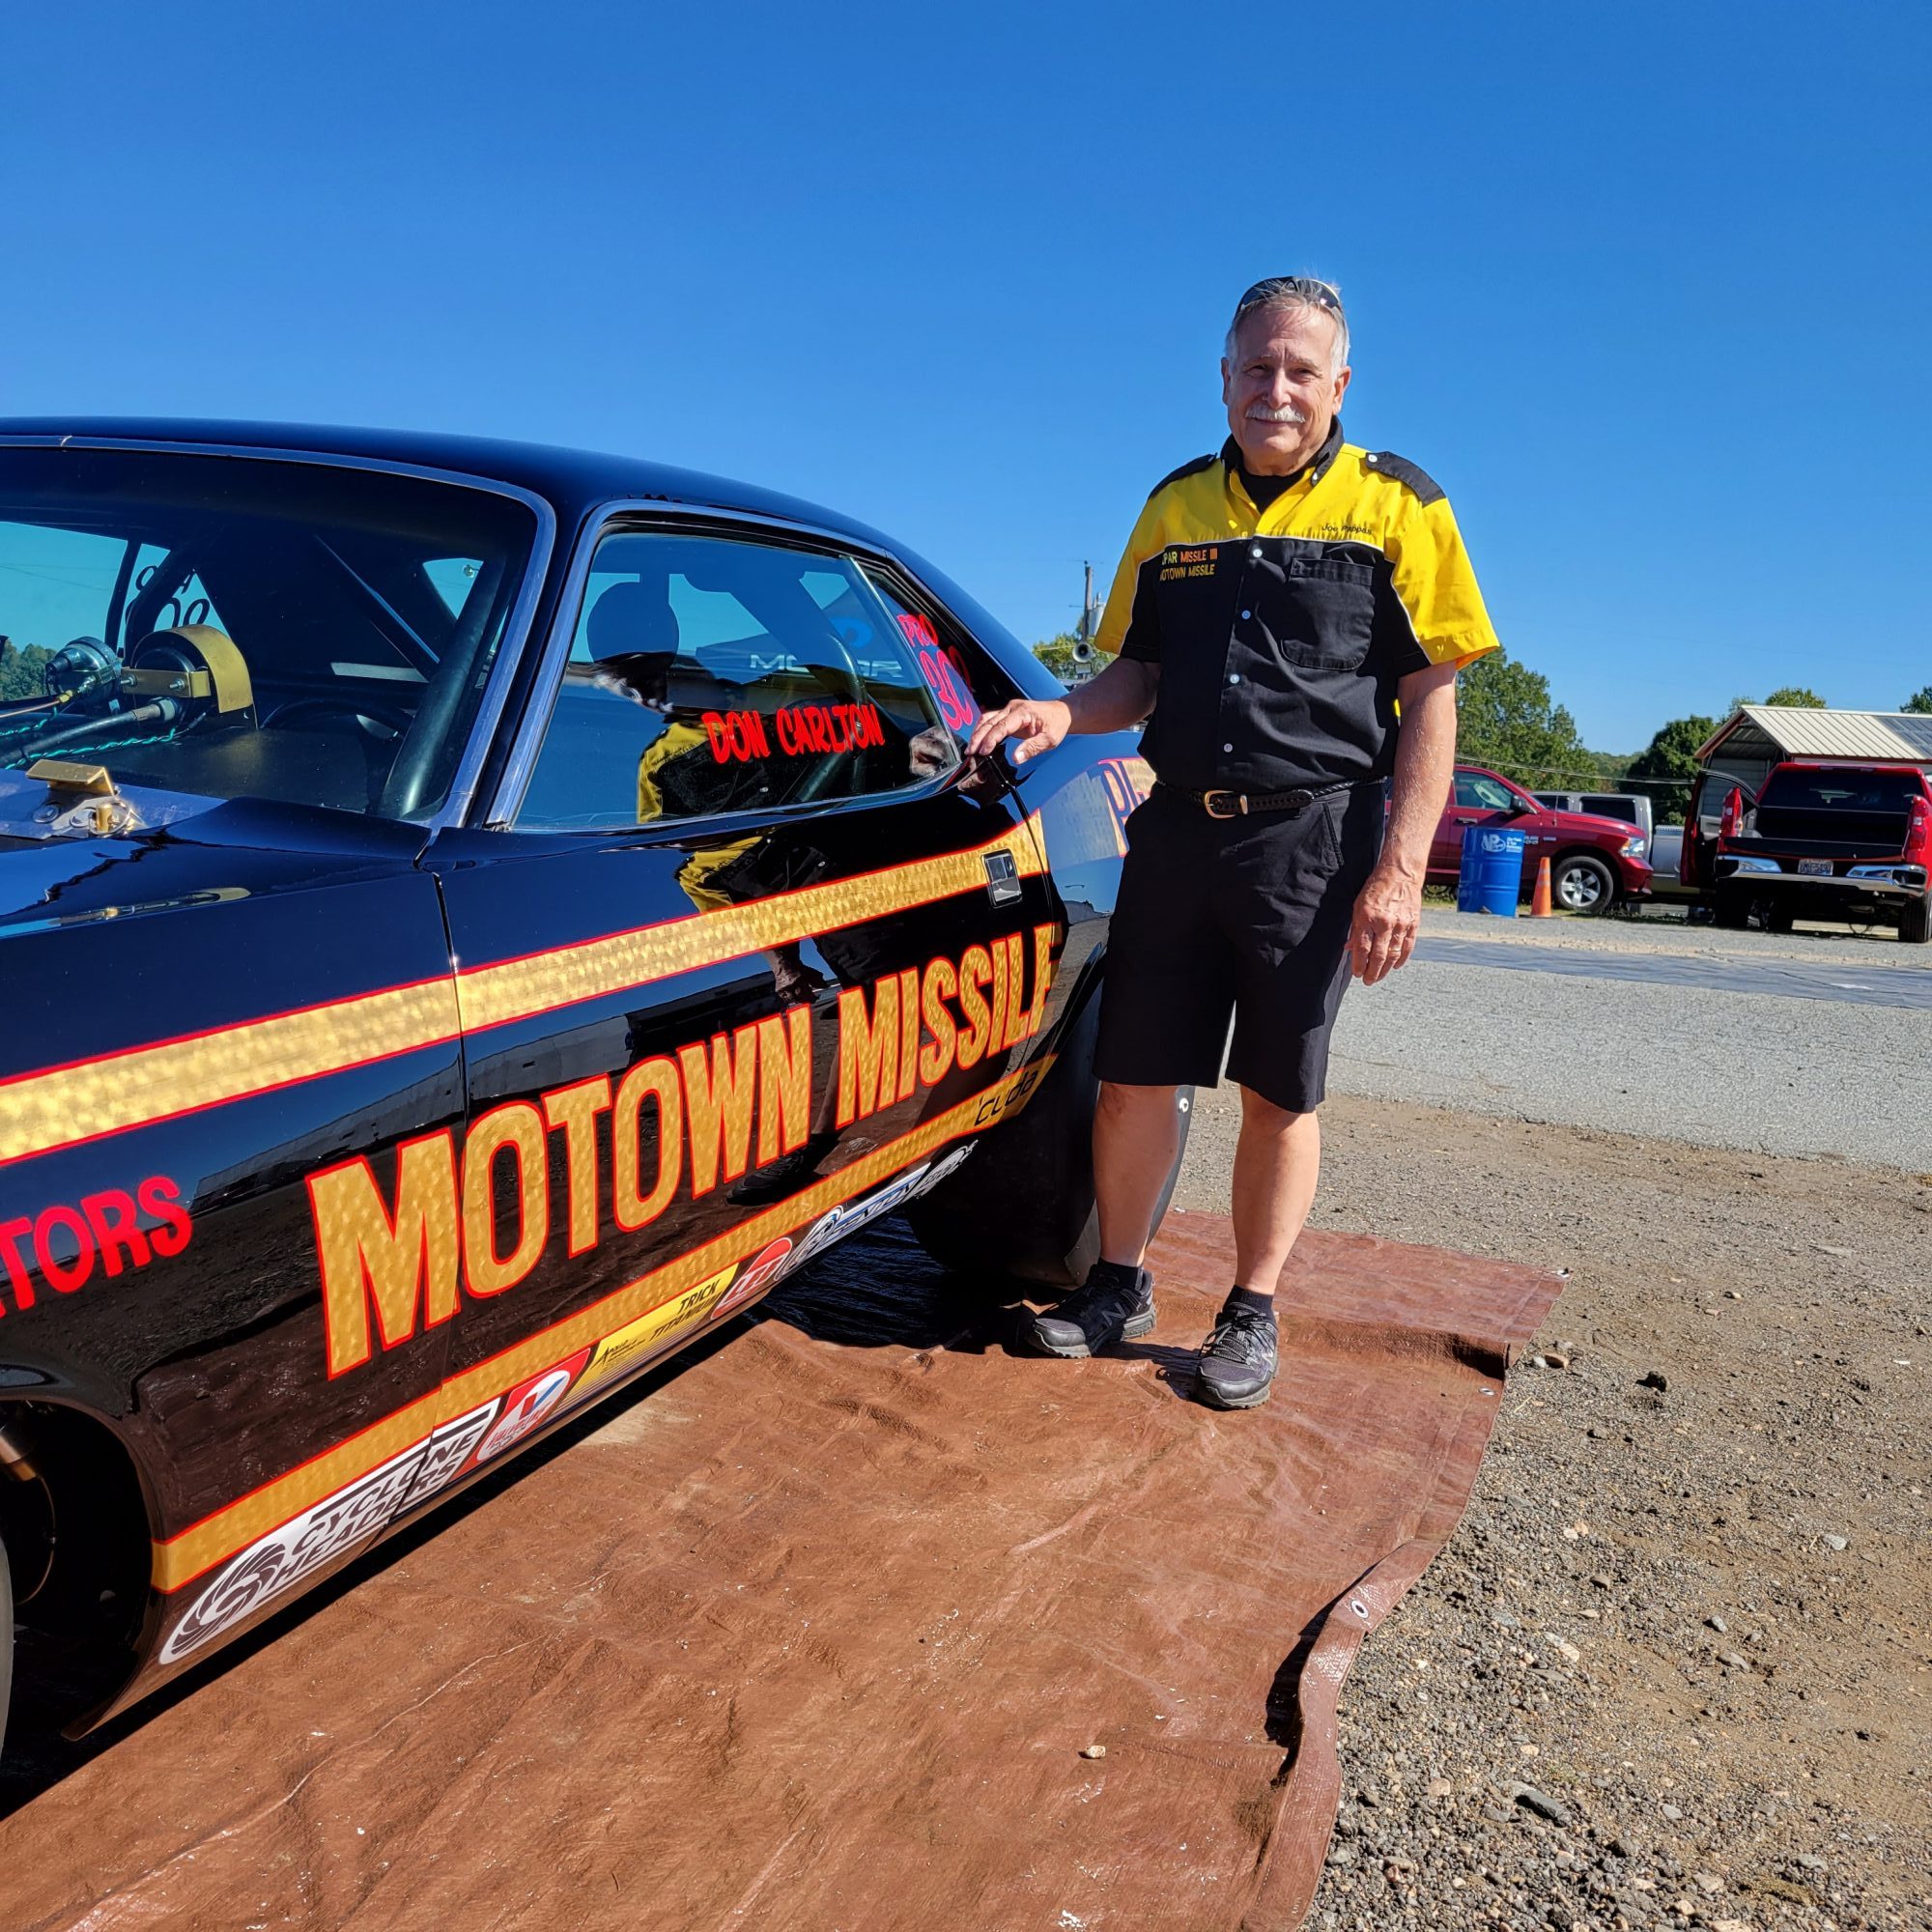 Man posing next to a race car